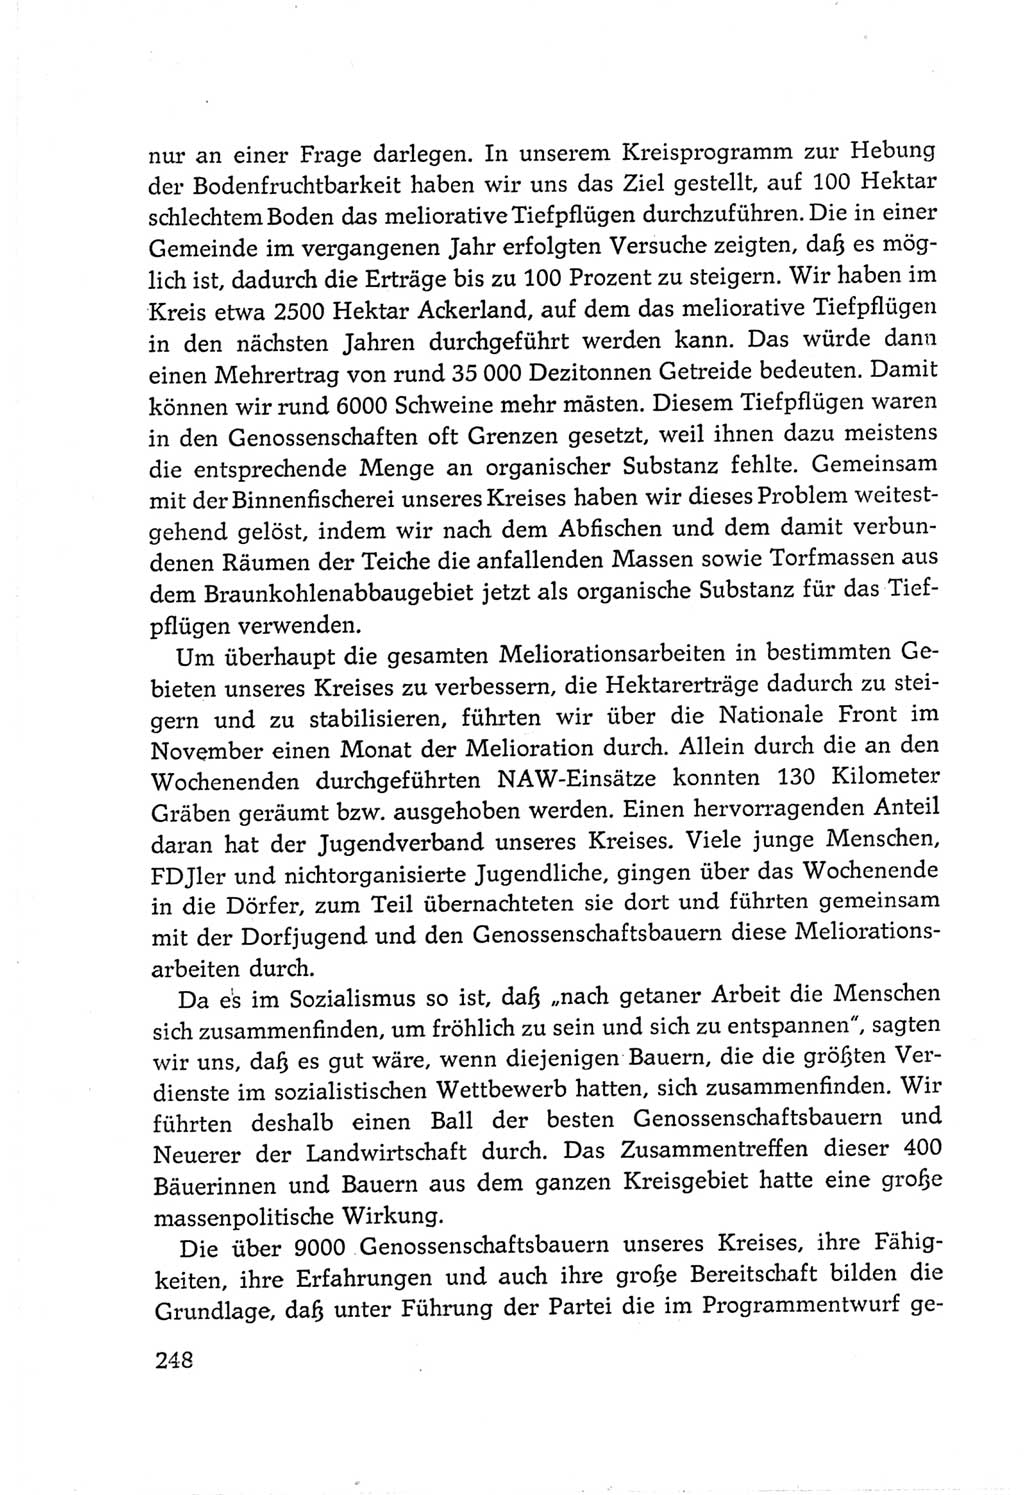 Protokoll der Verhandlungen des Ⅵ. Parteitages der Sozialistischen Einheitspartei Deutschlands (SED) [Deutsche Demokratische Republik (DDR)] 1963, Band Ⅲ, Seite 248 (Prot. Verh. Ⅵ. PT SED DDR 1963, Bd. Ⅲ, S. 248)